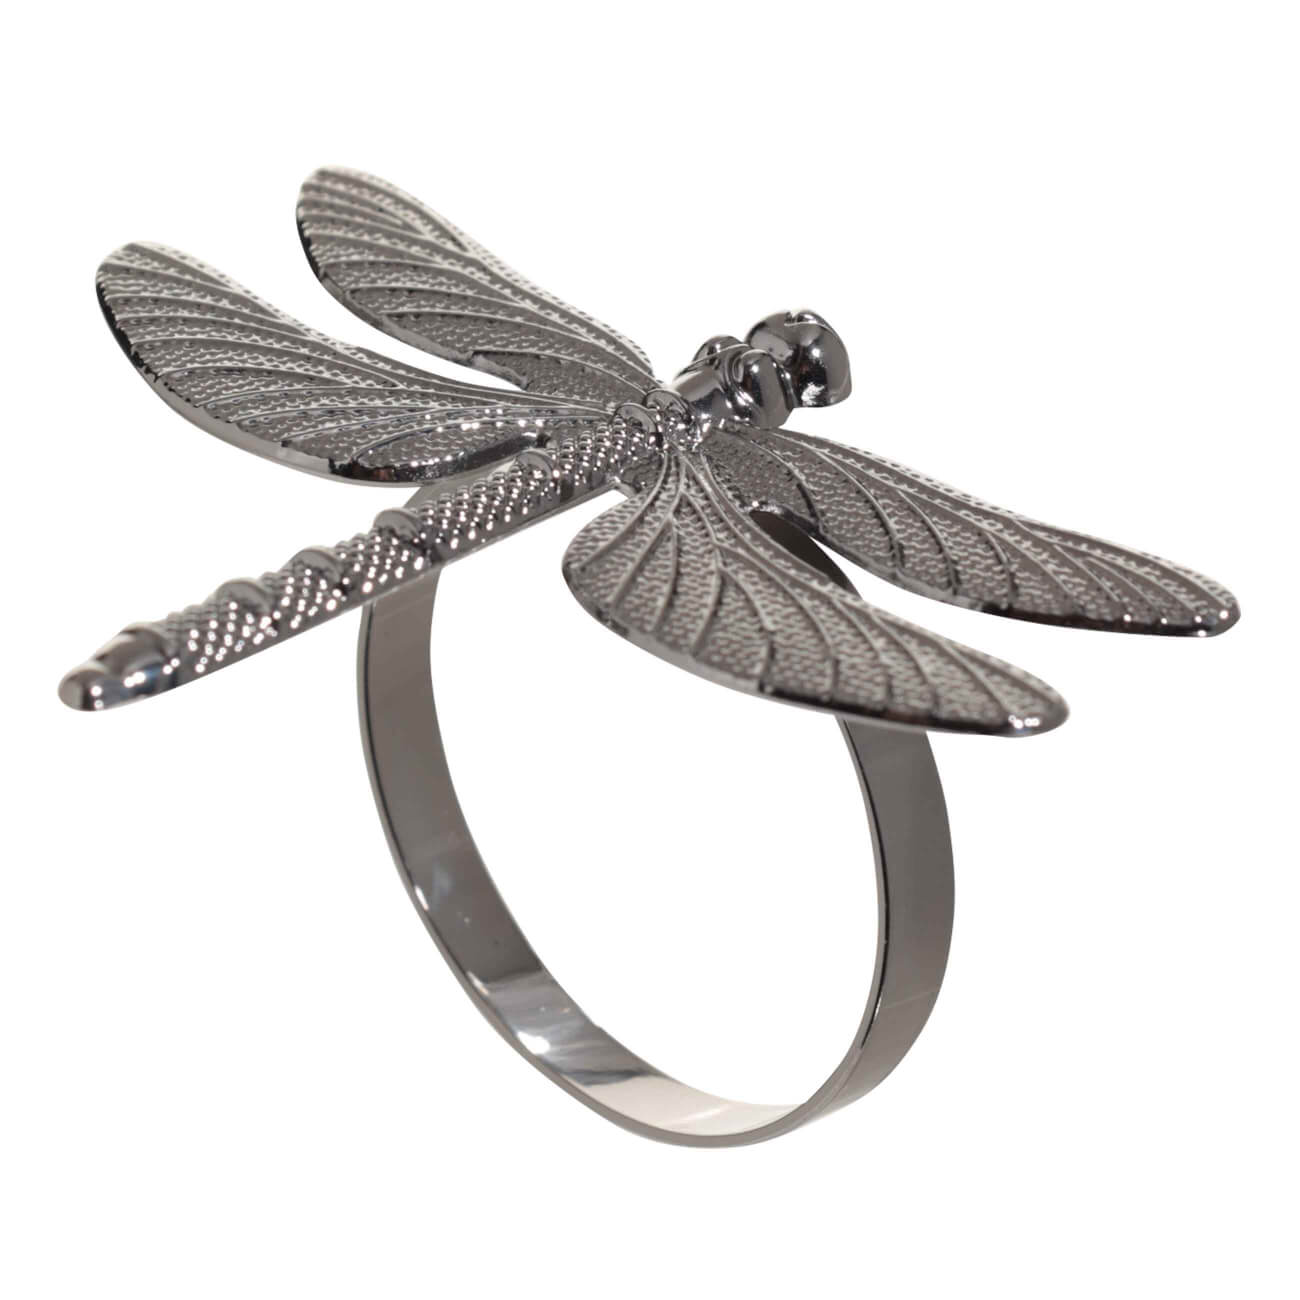 Кольцо для салфеток, 7 см, металл, черное, Стрекоза, Dragonfly кольцо для карниза d 28 33 мм 10 шт серебряный